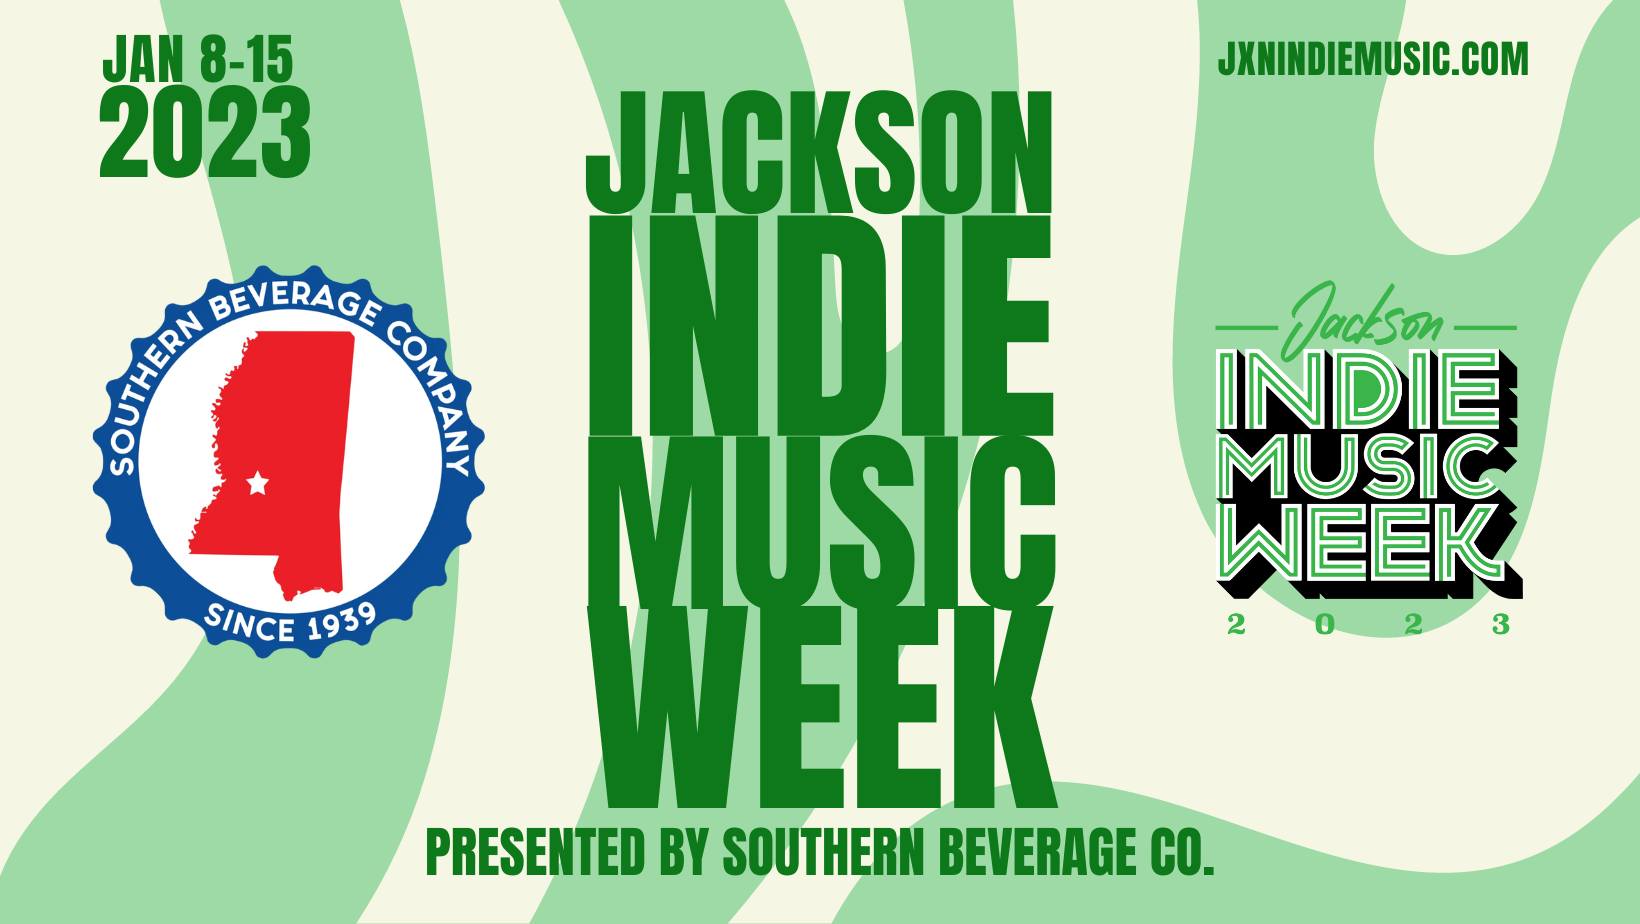 Jackson Indie Music Week 2023 (Sponsored by Southern Beverage Co.)